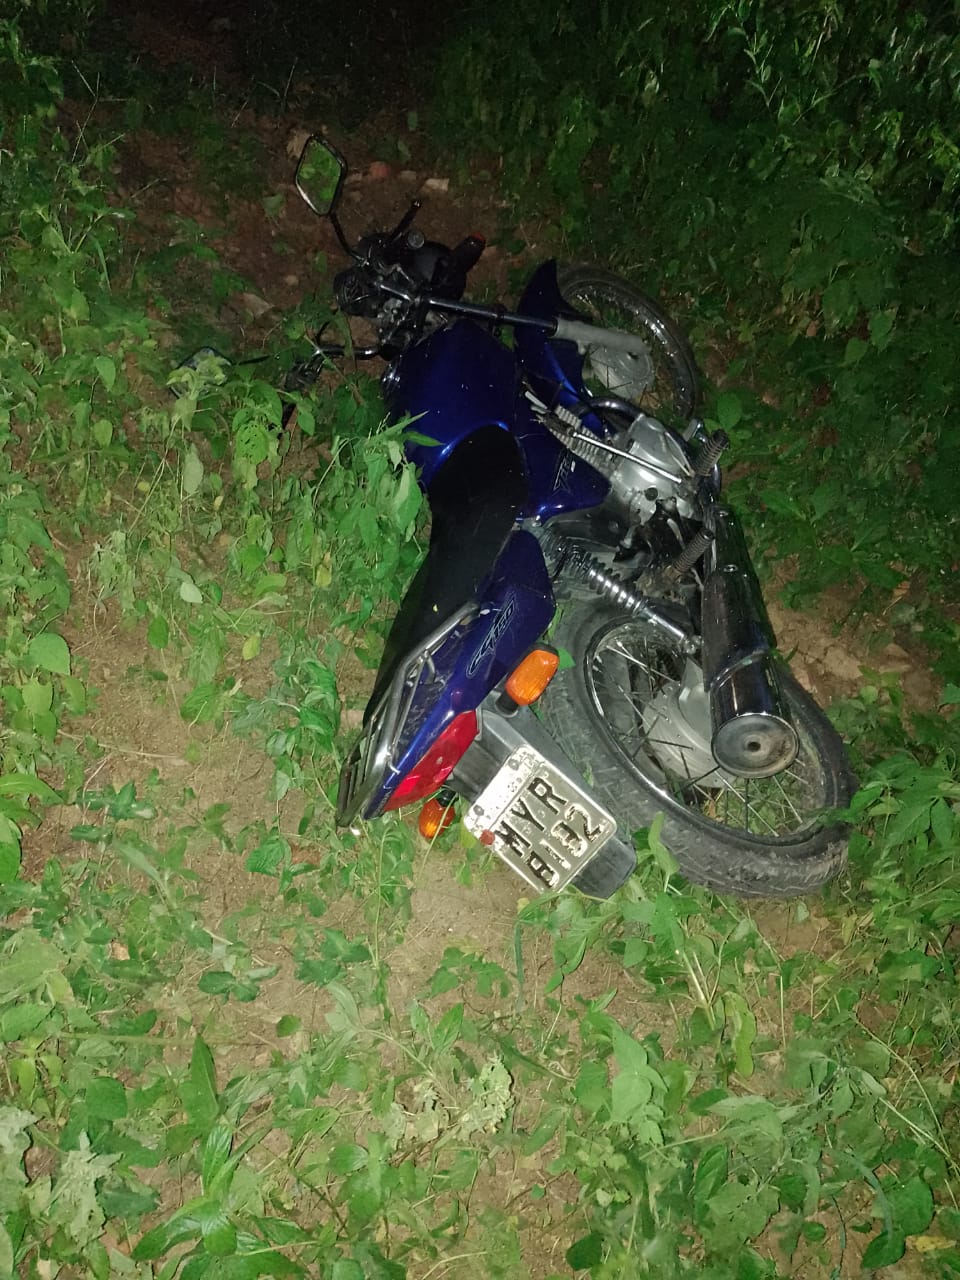 Moto roubada no Samanau (25/02) é encontrada pela polícia nesta quinta feira (03/03).